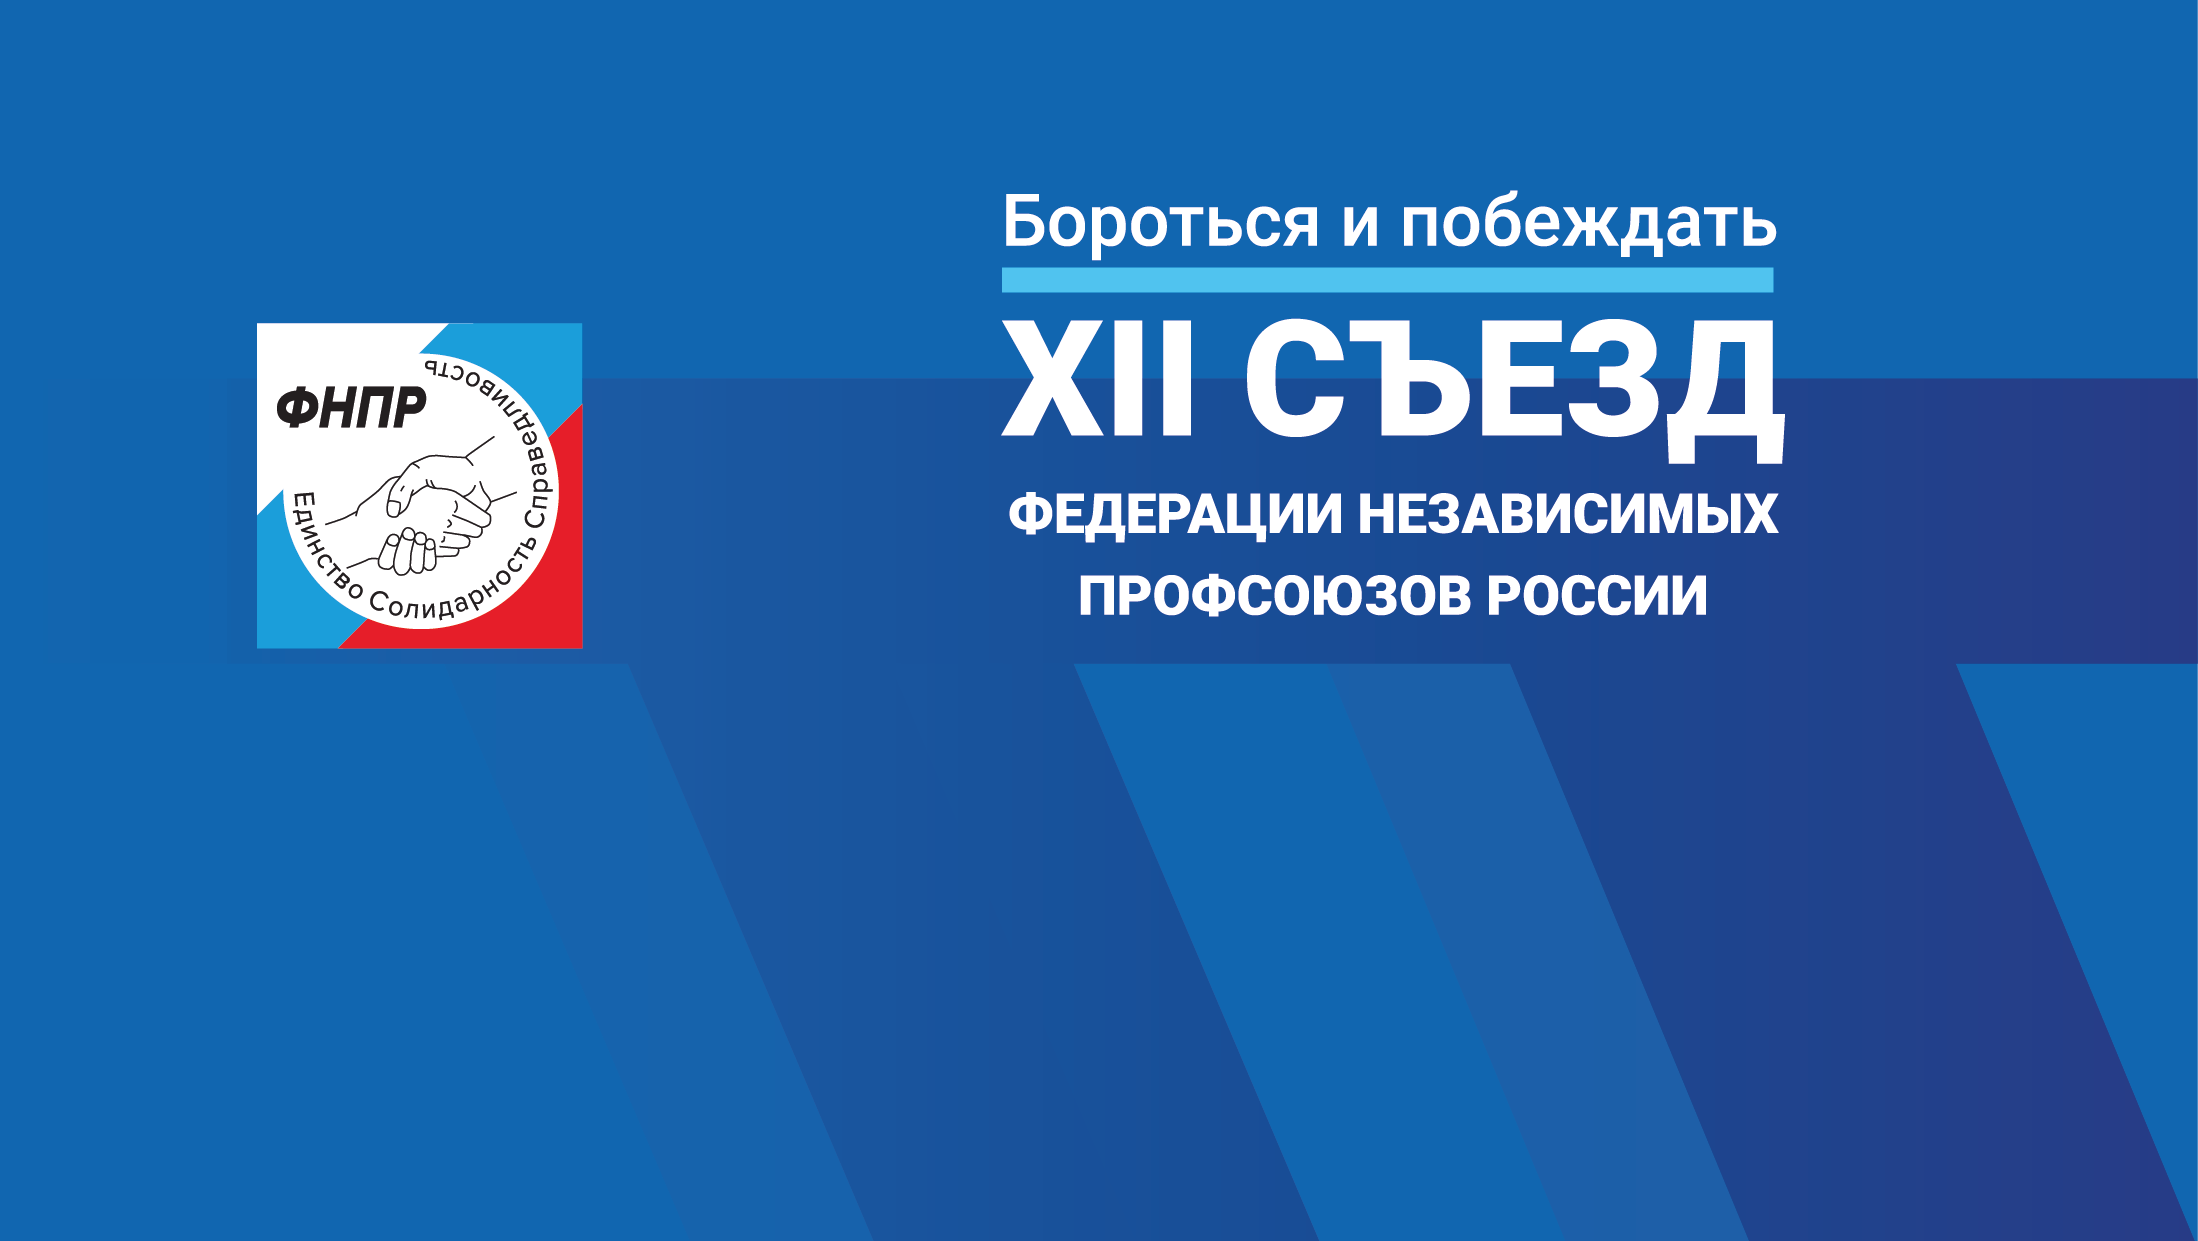 3-5 апреля состоится XII съезд Федерации Независимых Профсоюзов России thumbnail